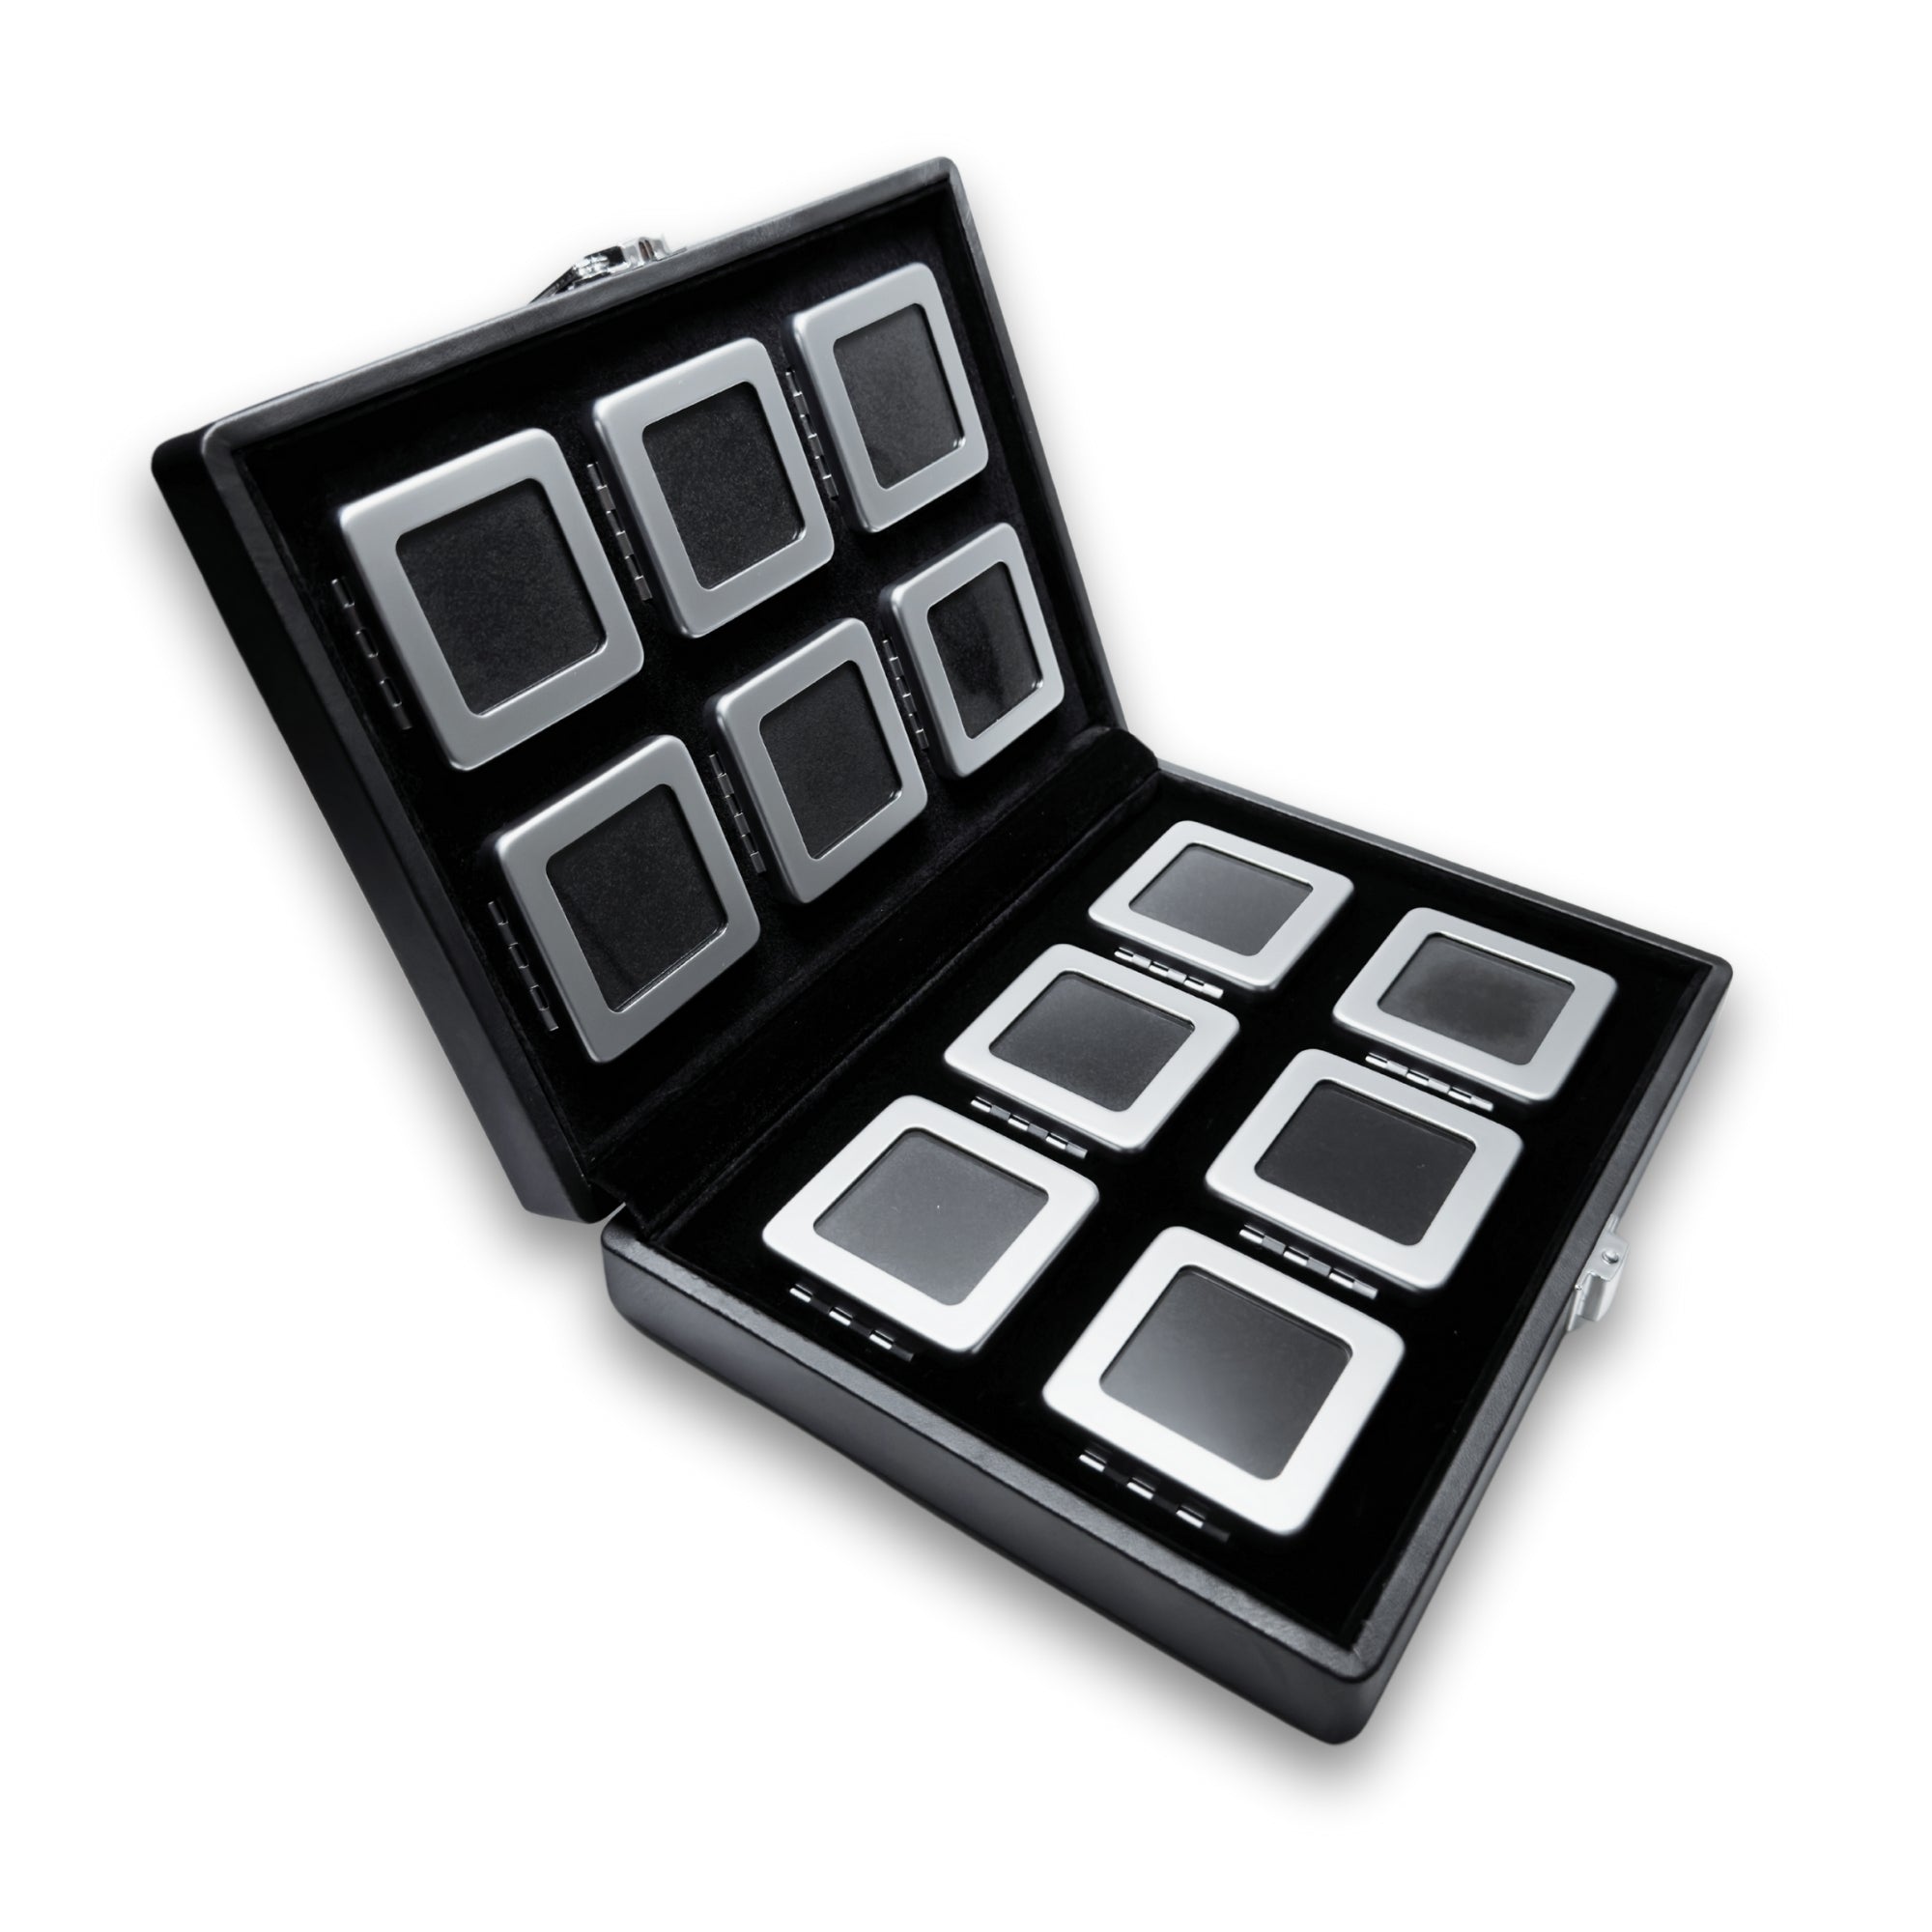 Πολυτελές σετ 12 κουτιών για πολύτιμους λίθους σε κομψή θήκη παρουσίασης